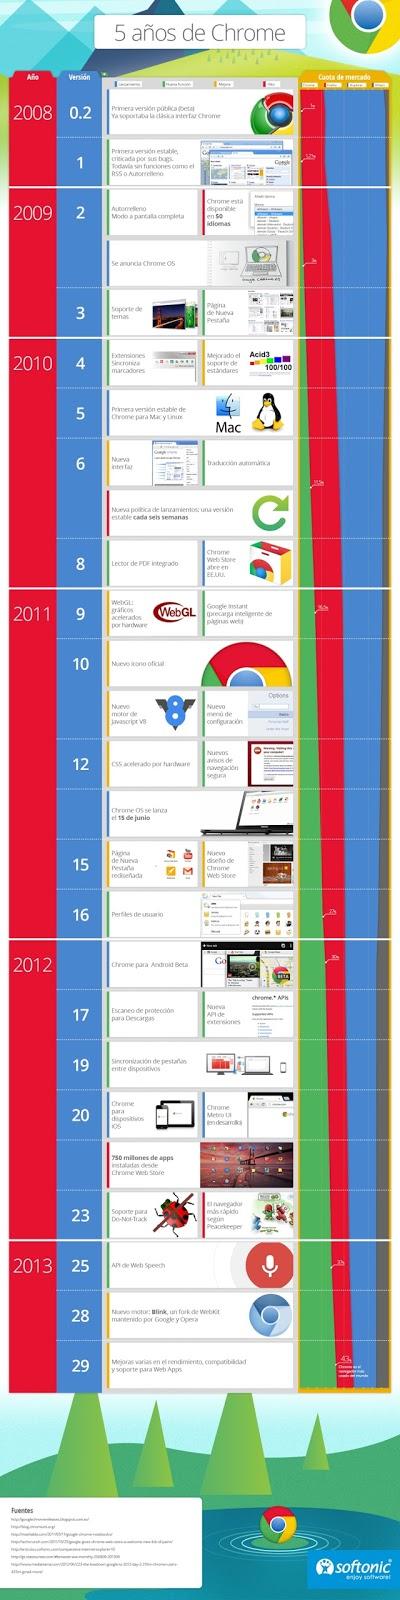 Infografía: los cinco primeros años de Google Chrome